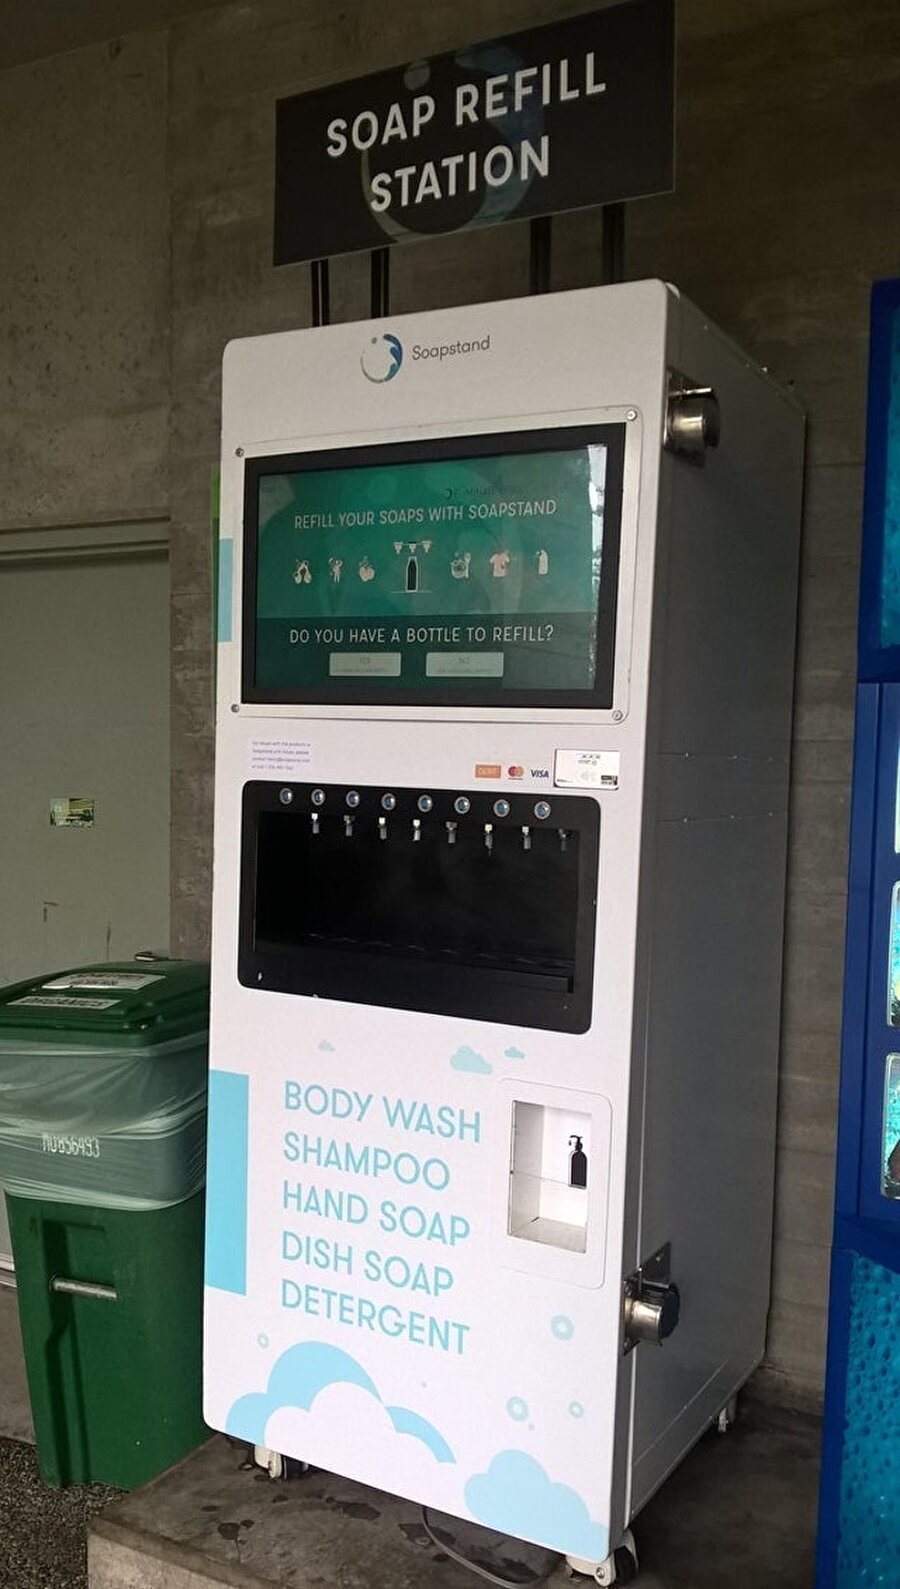 Kanada’da bir üniversitede bulunan bu otomattan, plastik kap kullanımından kaçınmak isteyenler kendi kaplarını getirip sabunla doldurabiliyor

                                    
                                    
                                
                                